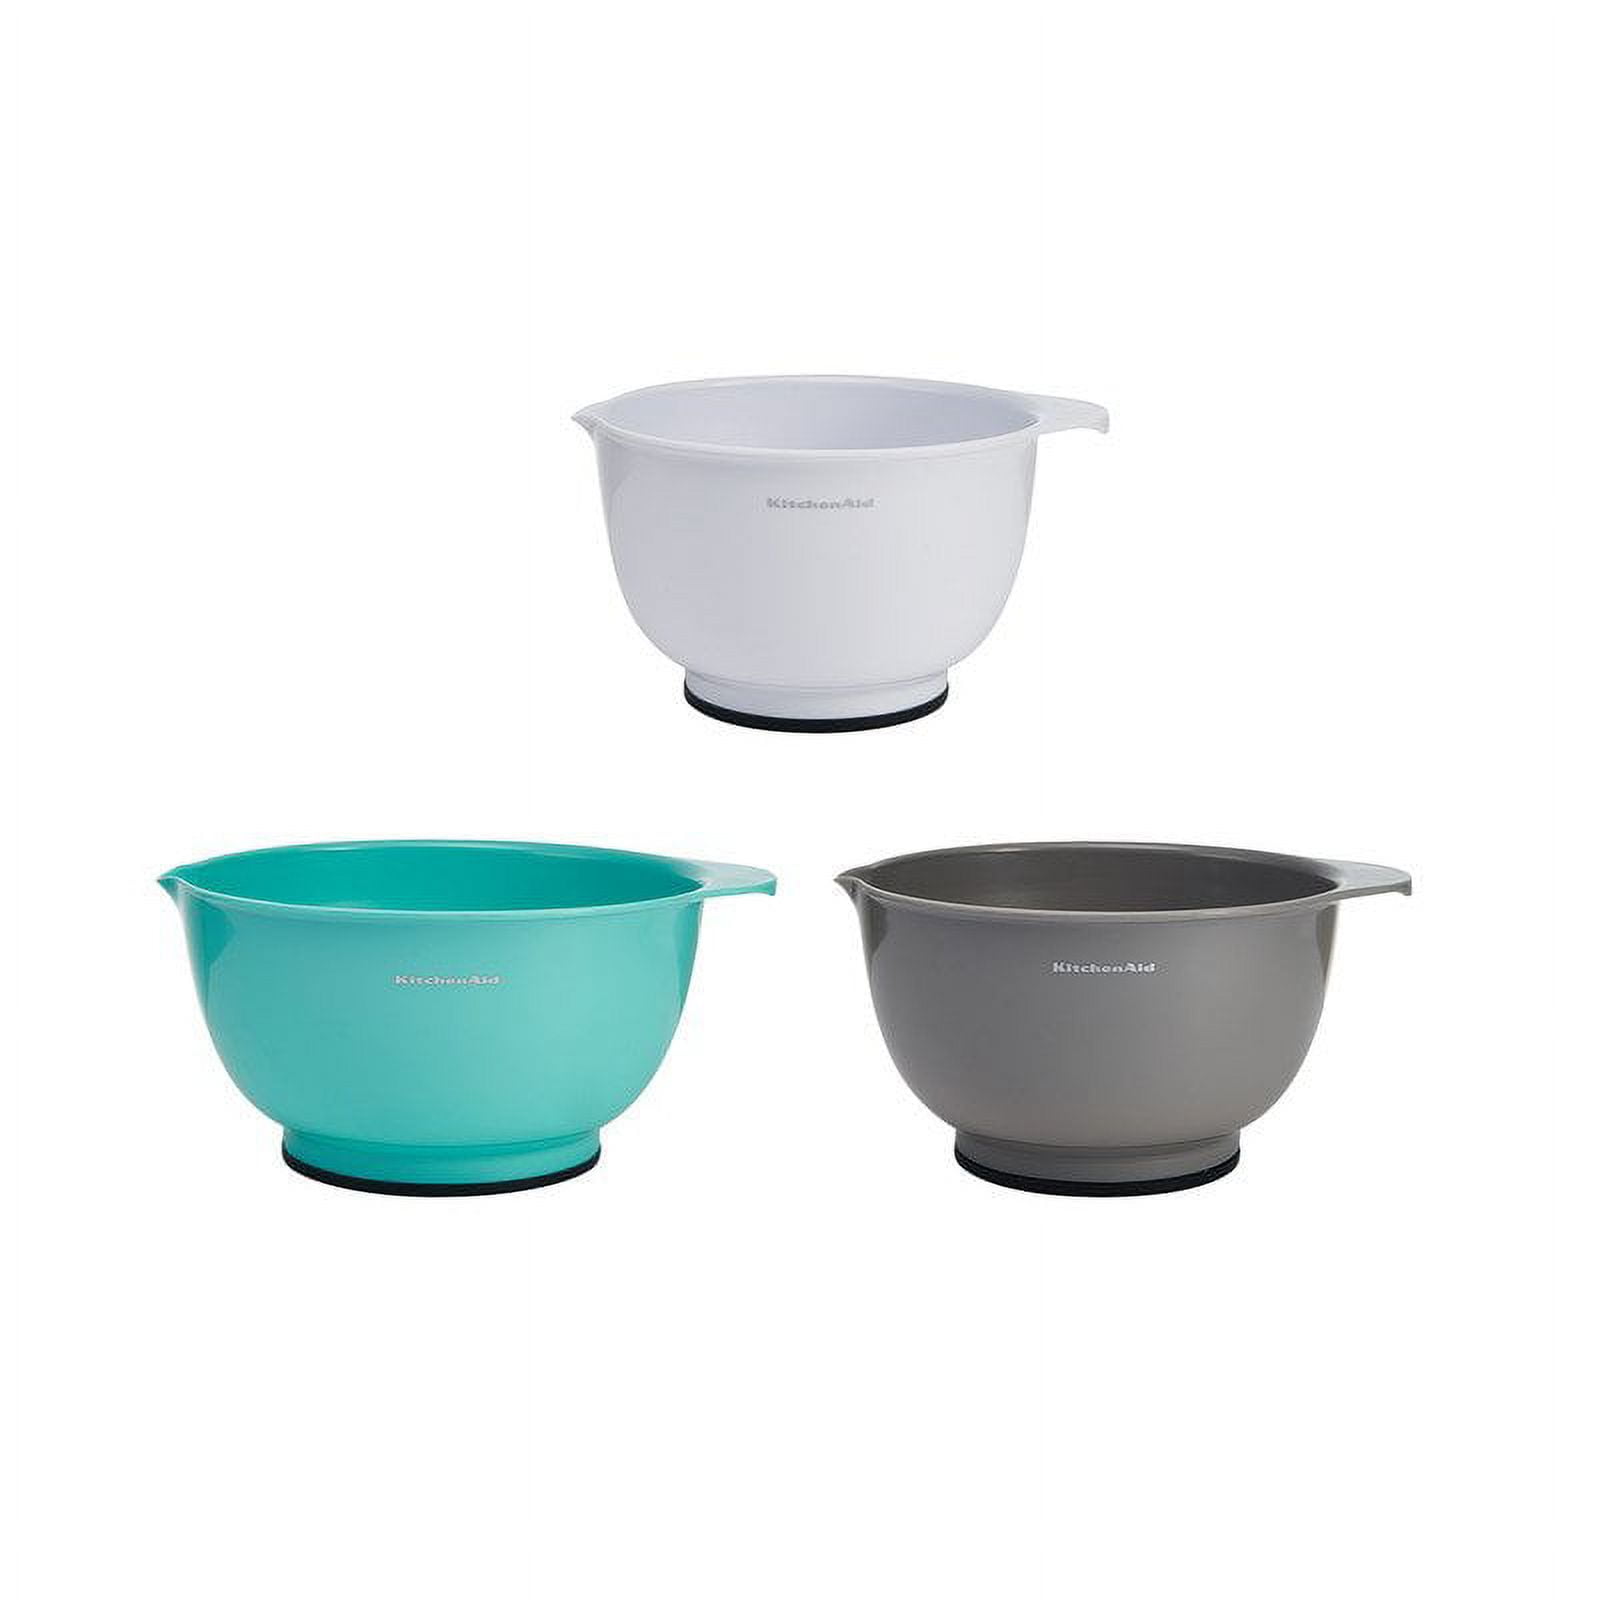 KitchenAid Universal Mixing Bowls 3-Piece Set - 20864539